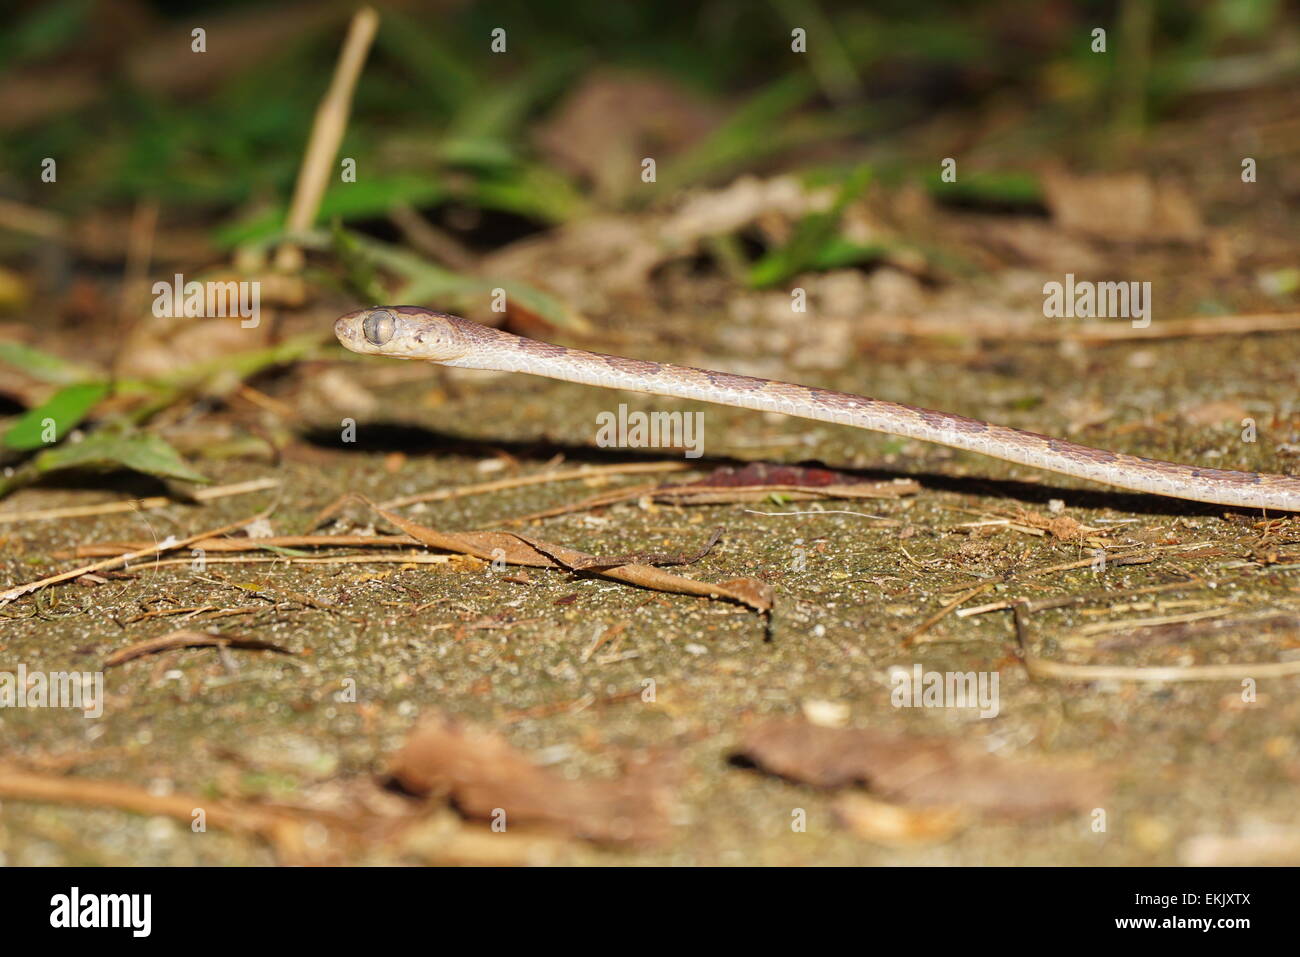 Romo vid de cabeza de serpiente, Imantodes lentiferus, sobre el terreno, Bocas del Toro, Panamá, América Central Foto de stock